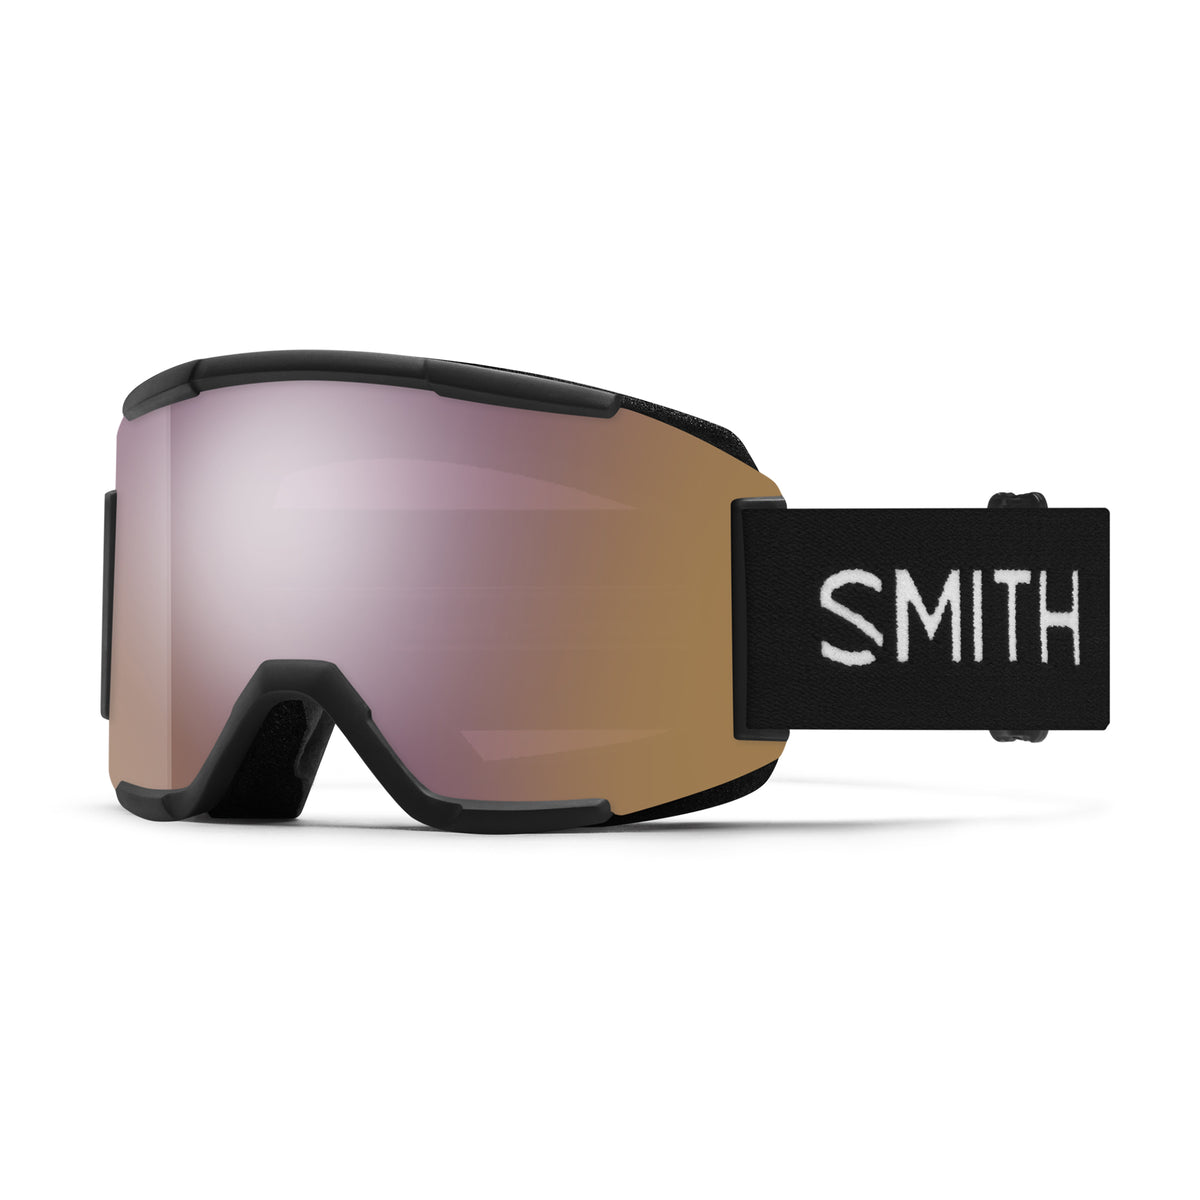 Smith SQUAD Snow Goggles